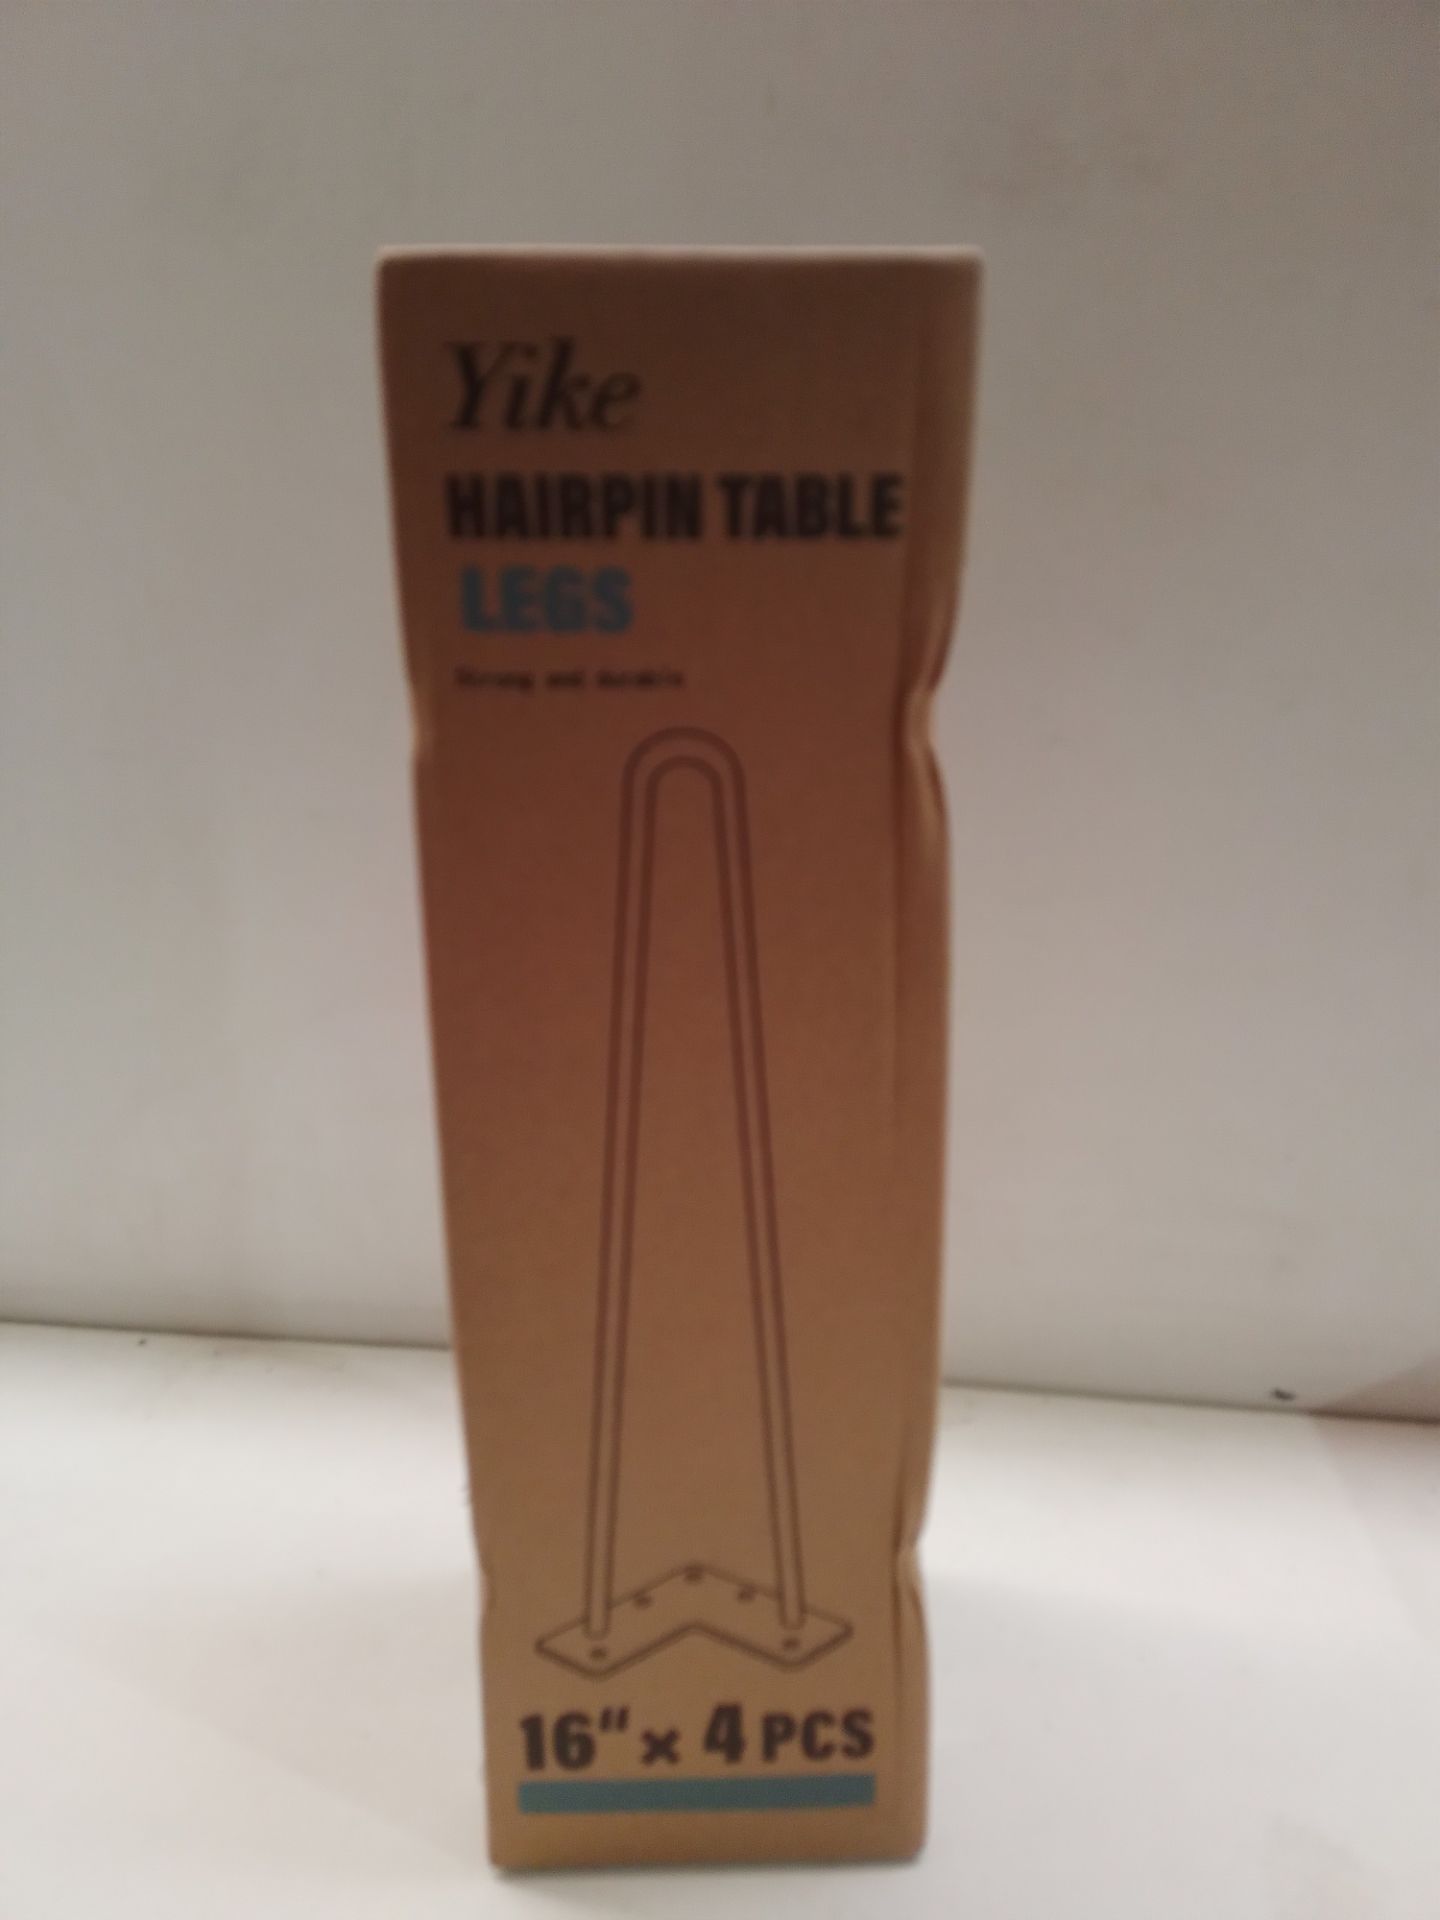 RRP £26.99 YIKE Hairpin Table Legs Metal Set of 4PCS - Image 2 of 2